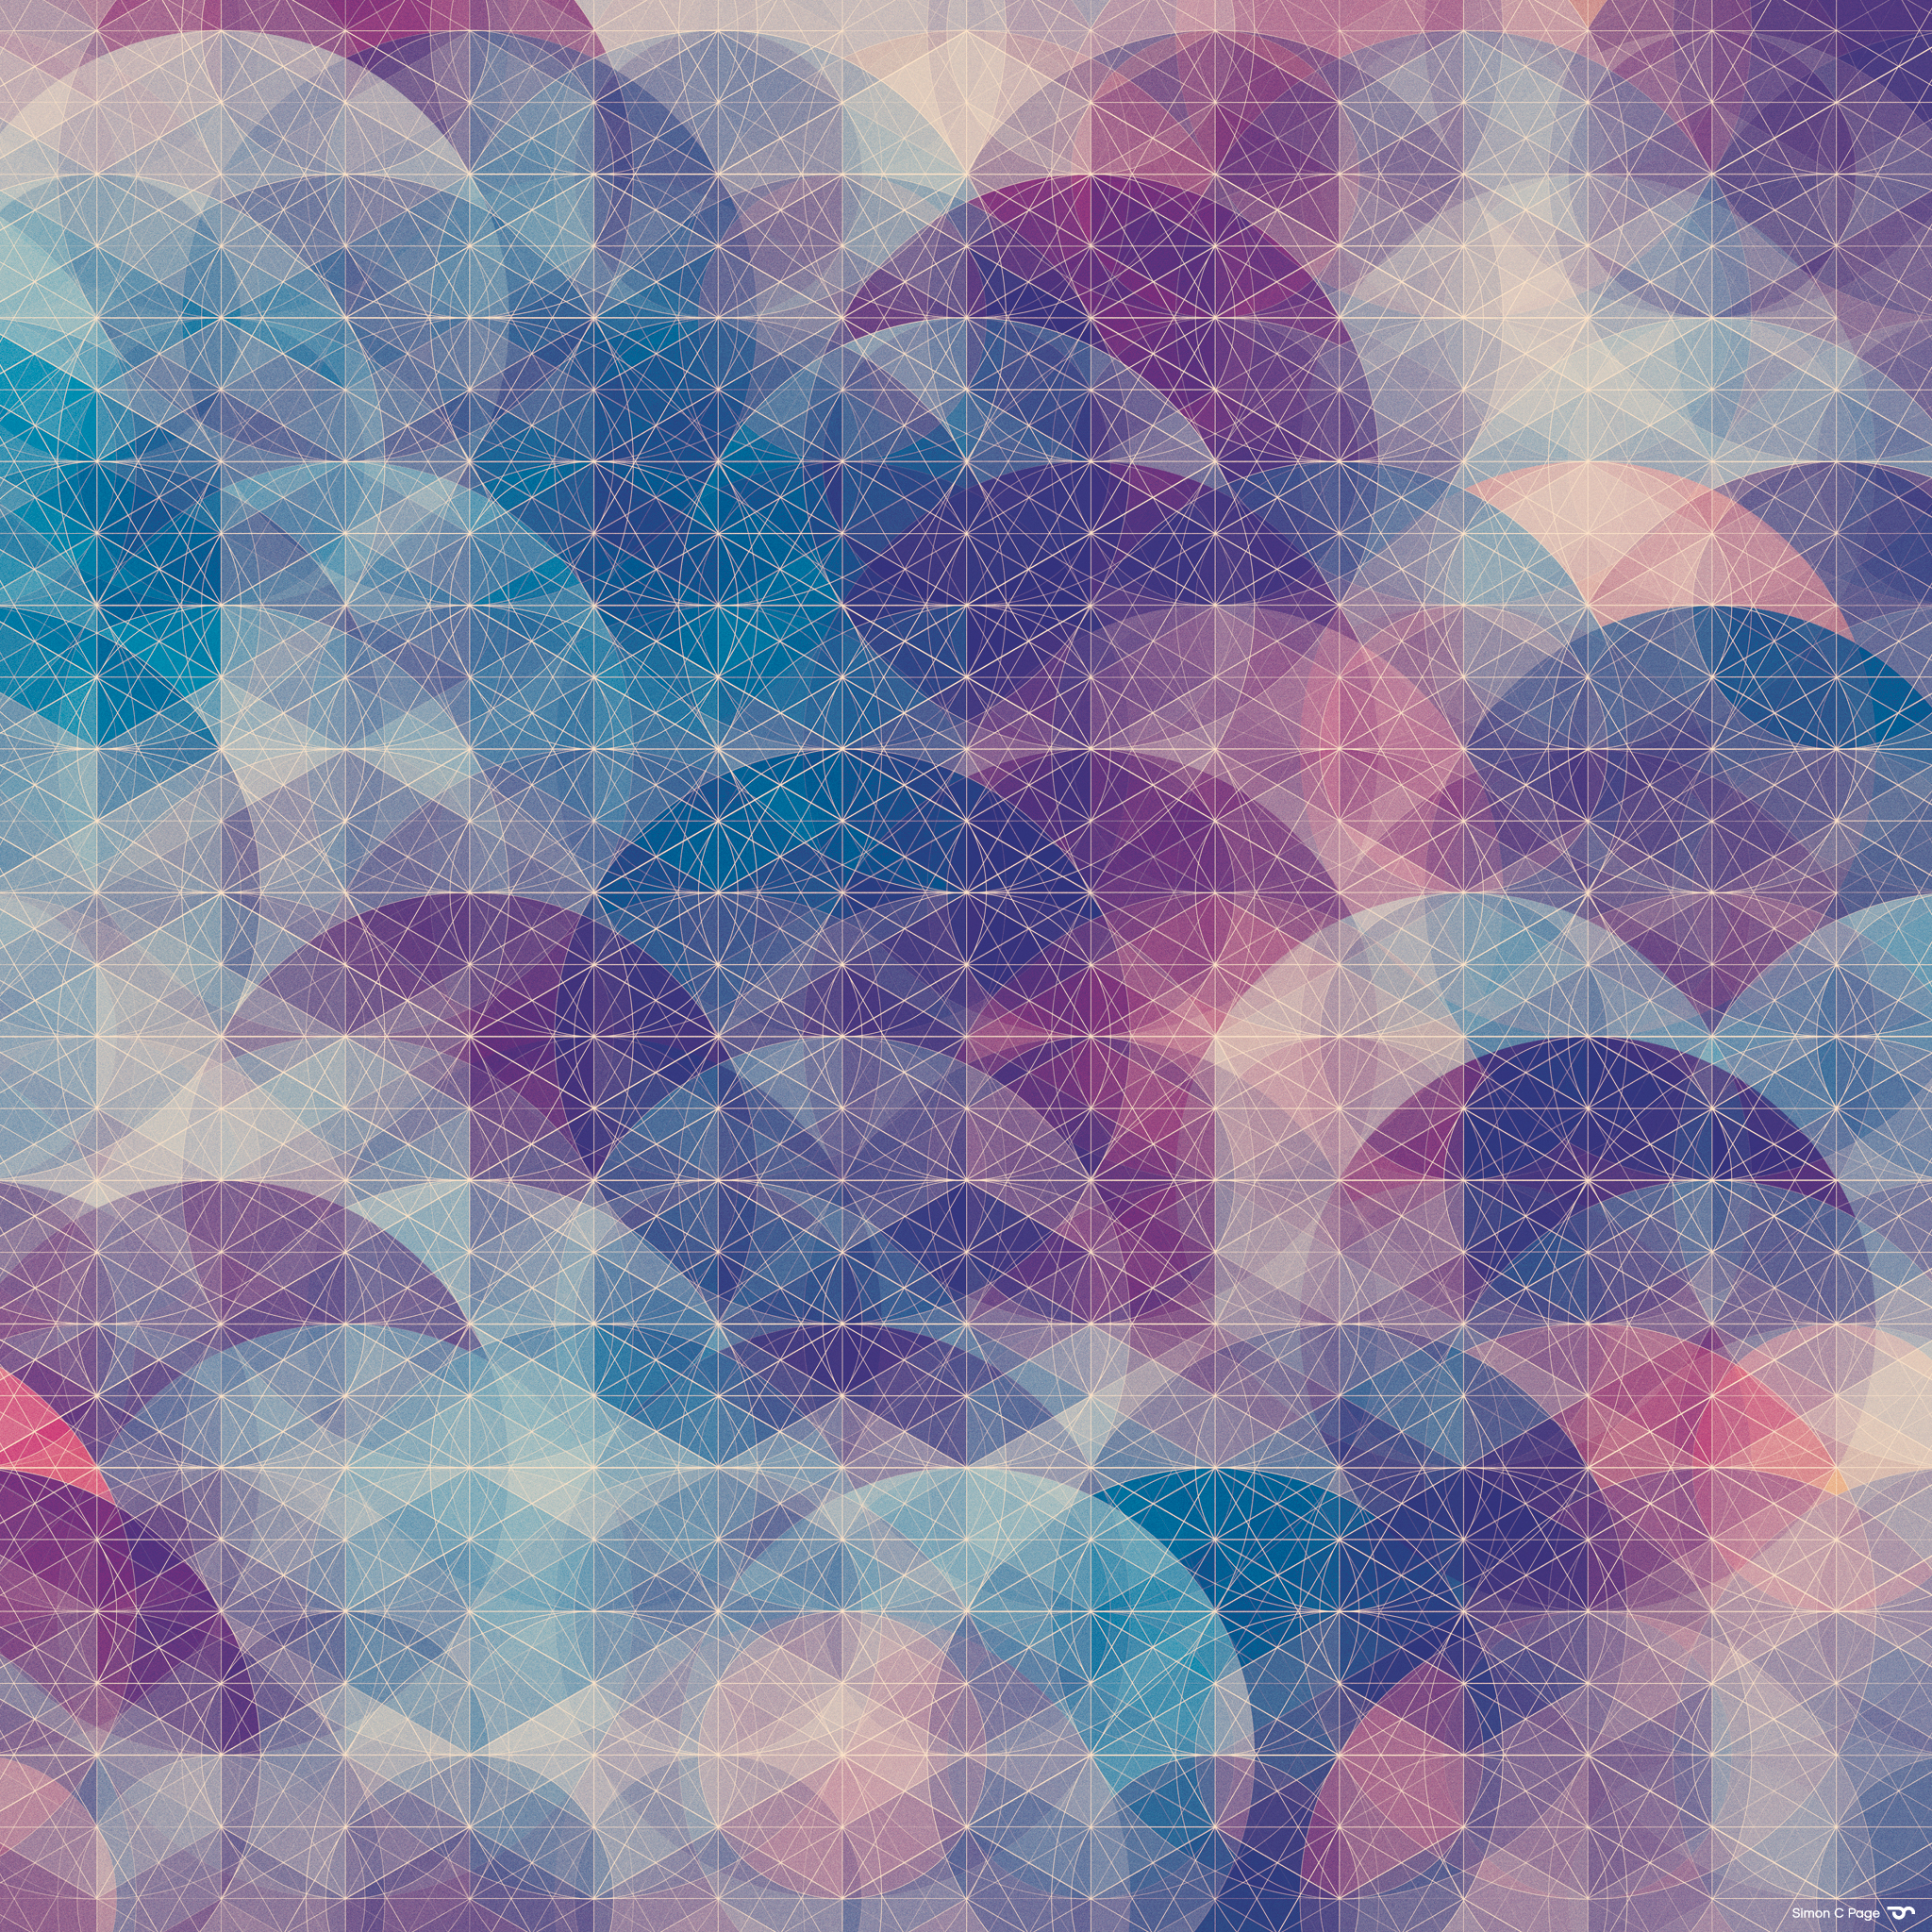 ipad mini wallpaper tumblr,pattern,blue,purple,design,sky